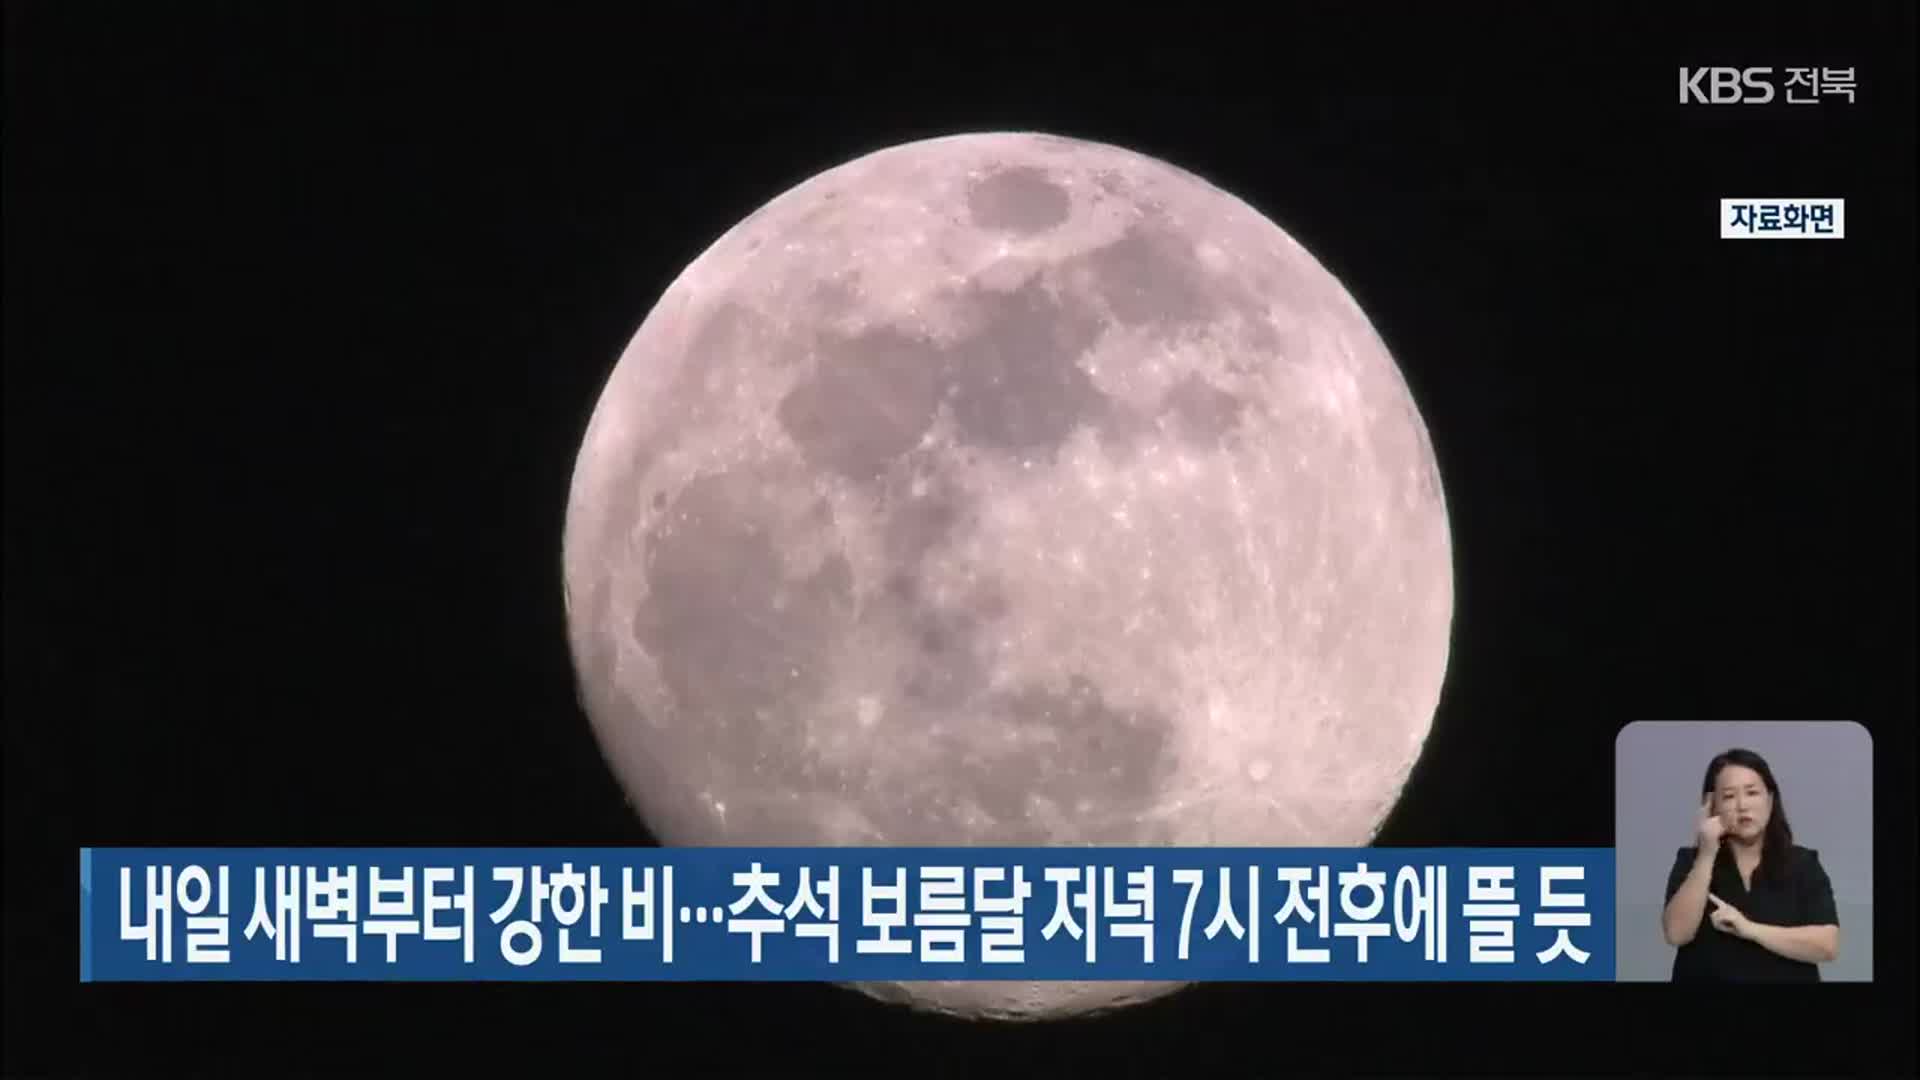 전북 내일 새벽부터 강한 비…추석 보름달 저녁 7시 전후에 뜰 듯